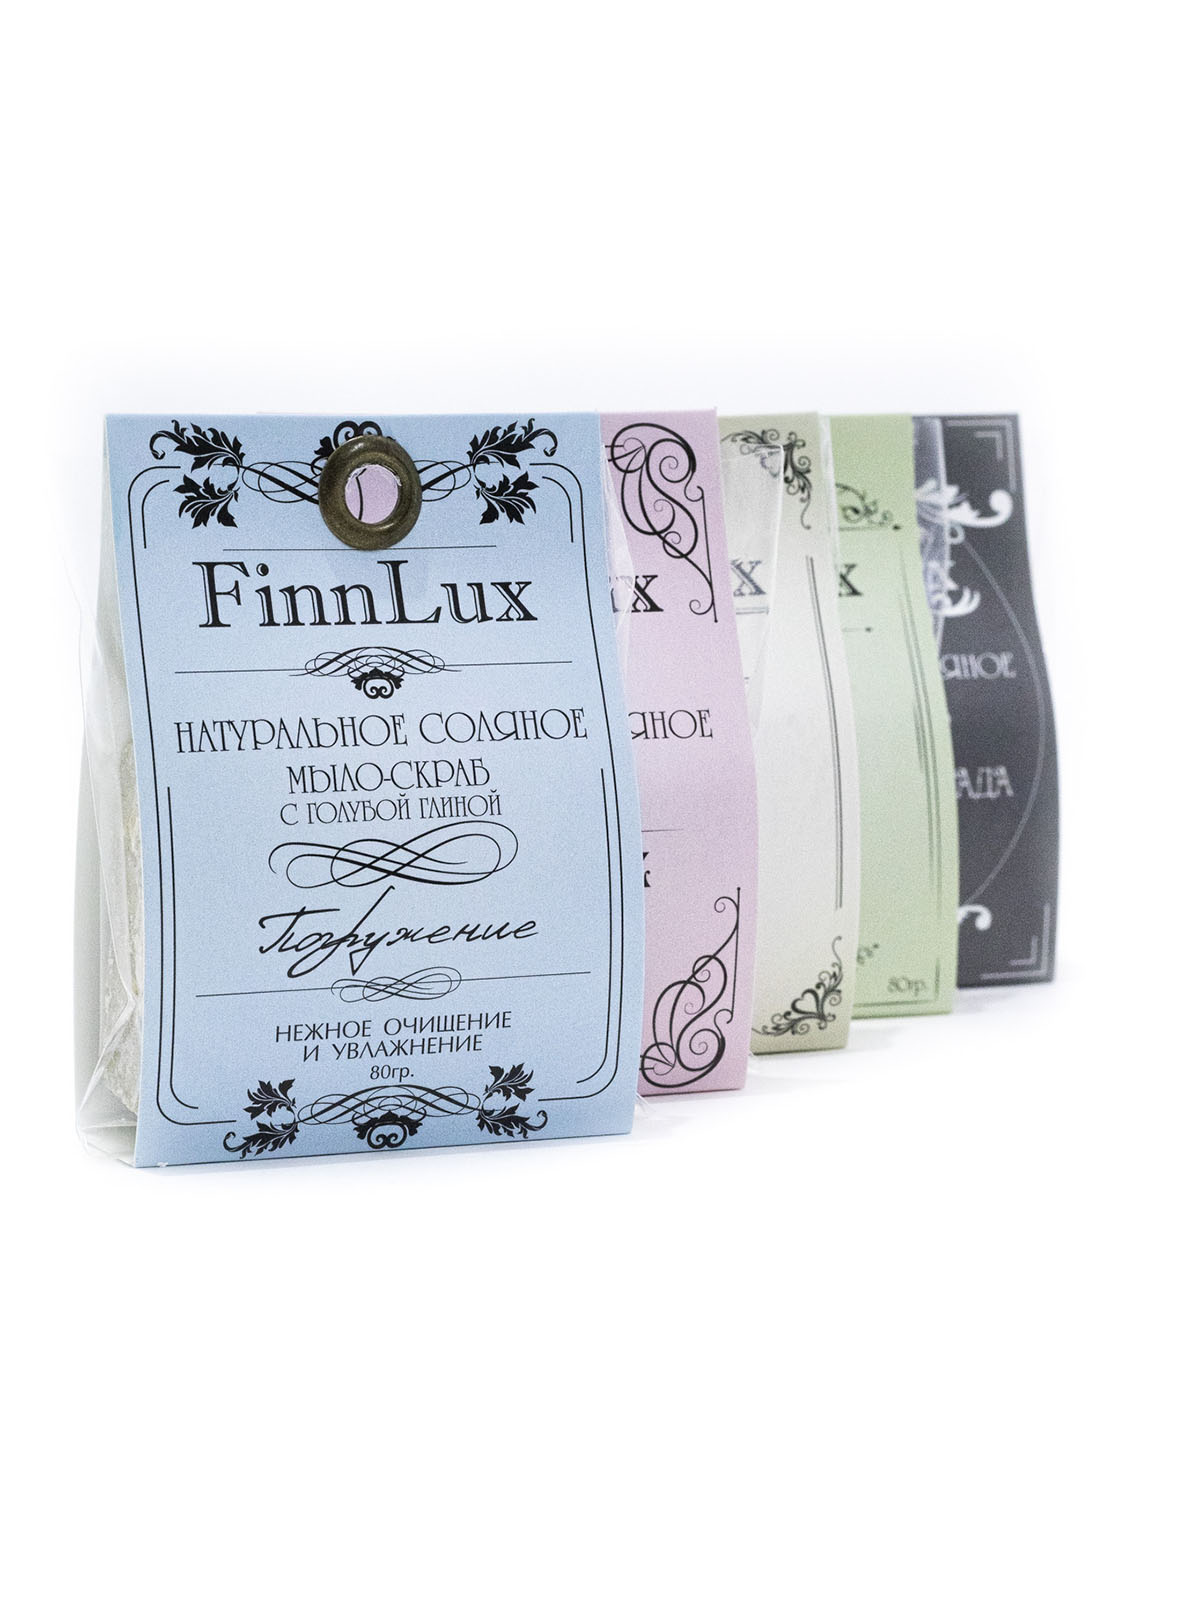 Мыло для рук Finn Lux Соляное ручной работы Romantic с нежным ароматом дикой розы вес 80 гр. - фото 4